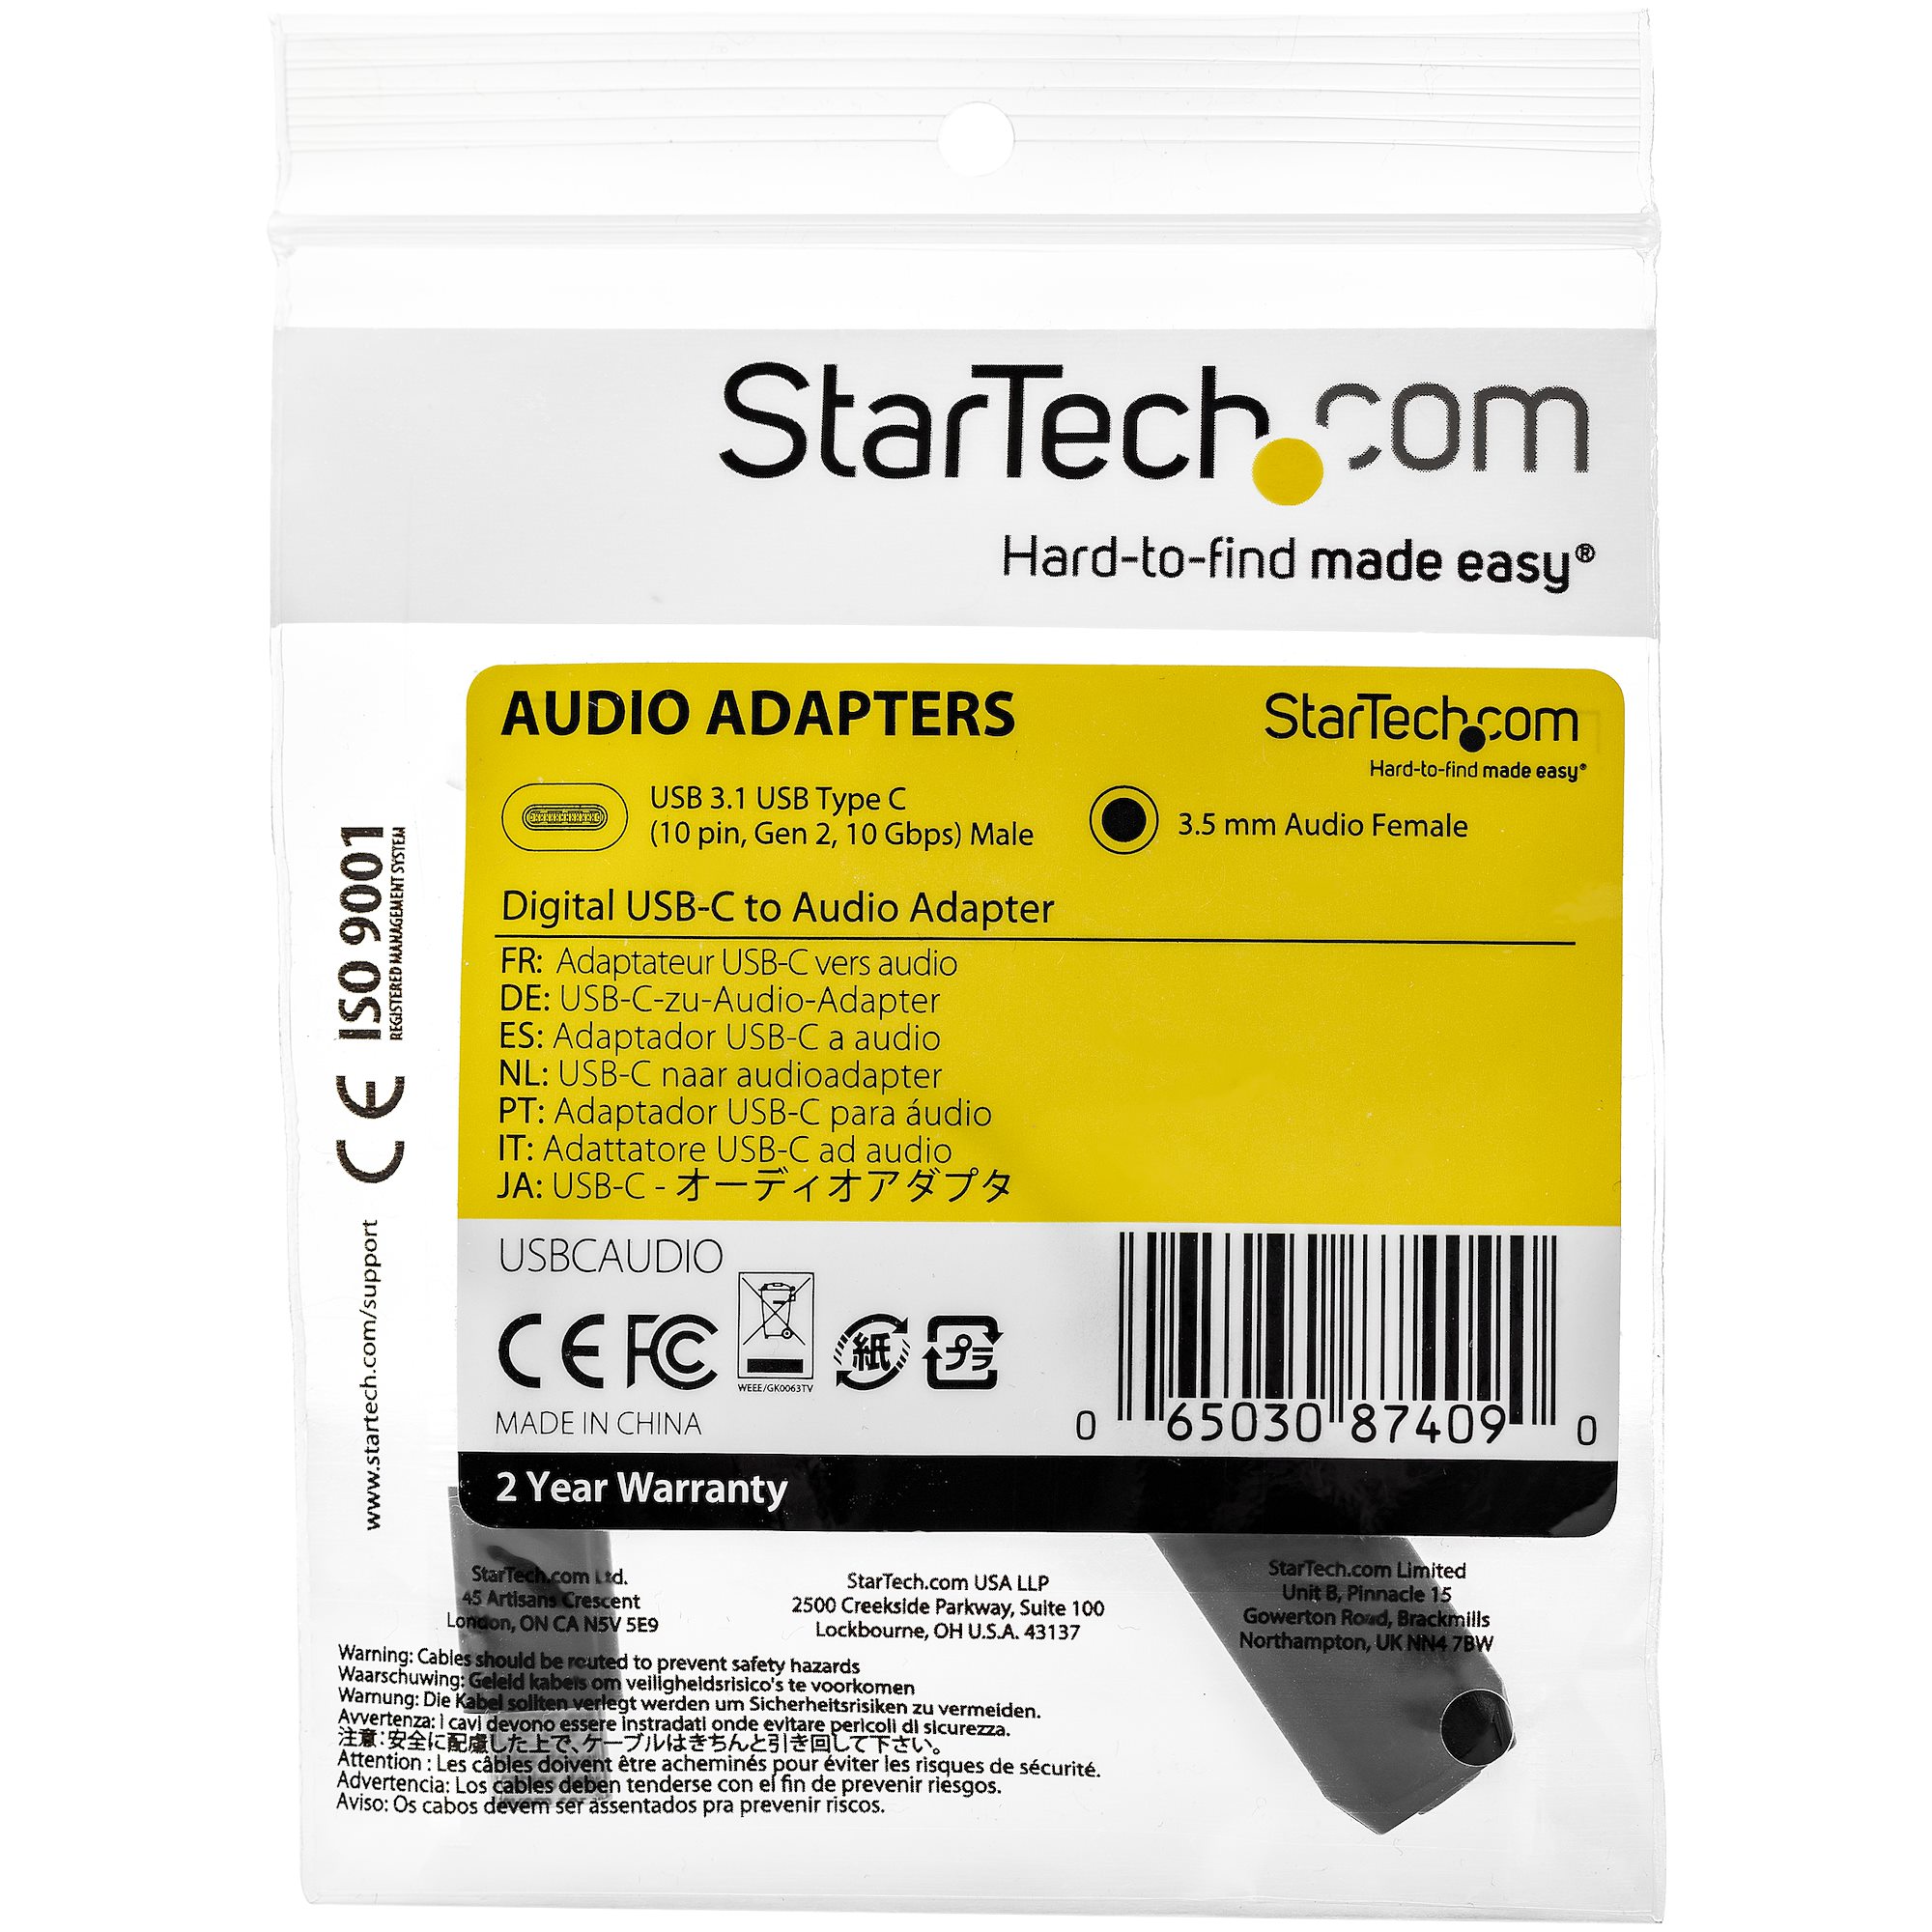 StarTech Headset Adapter